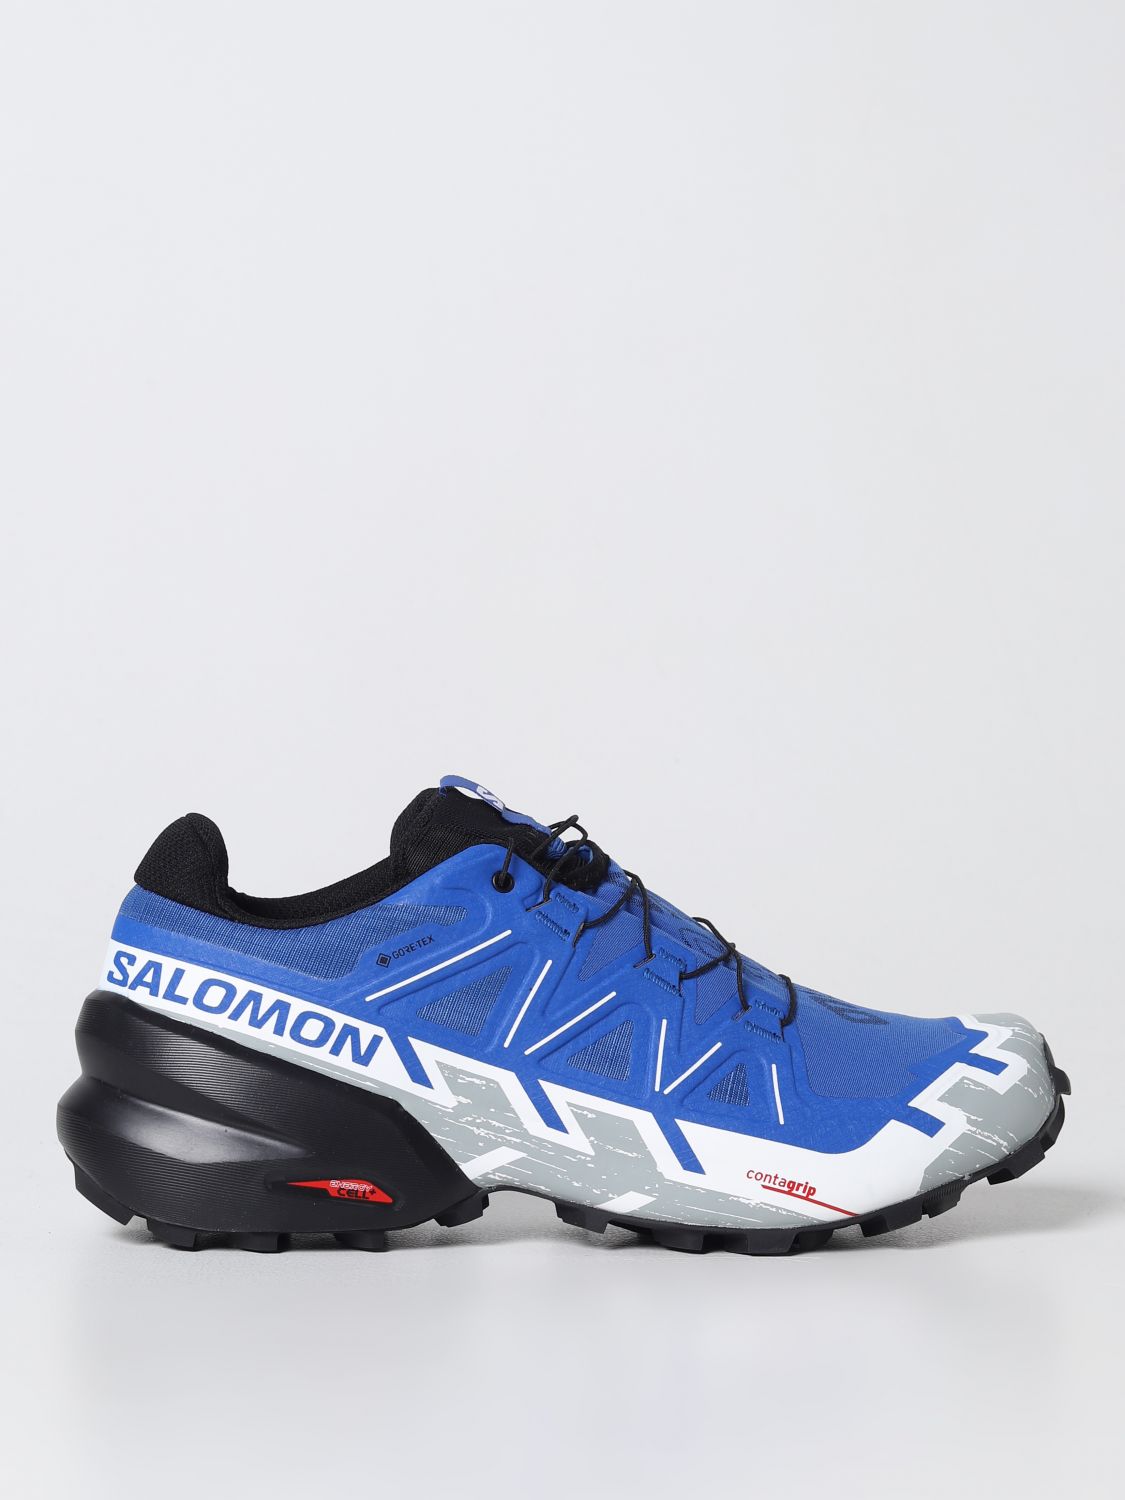 streepje platform Wacht even SALOMON: sneakers for man - Blue | Salomon sneakers 417388 online on  GIGLIO.COM